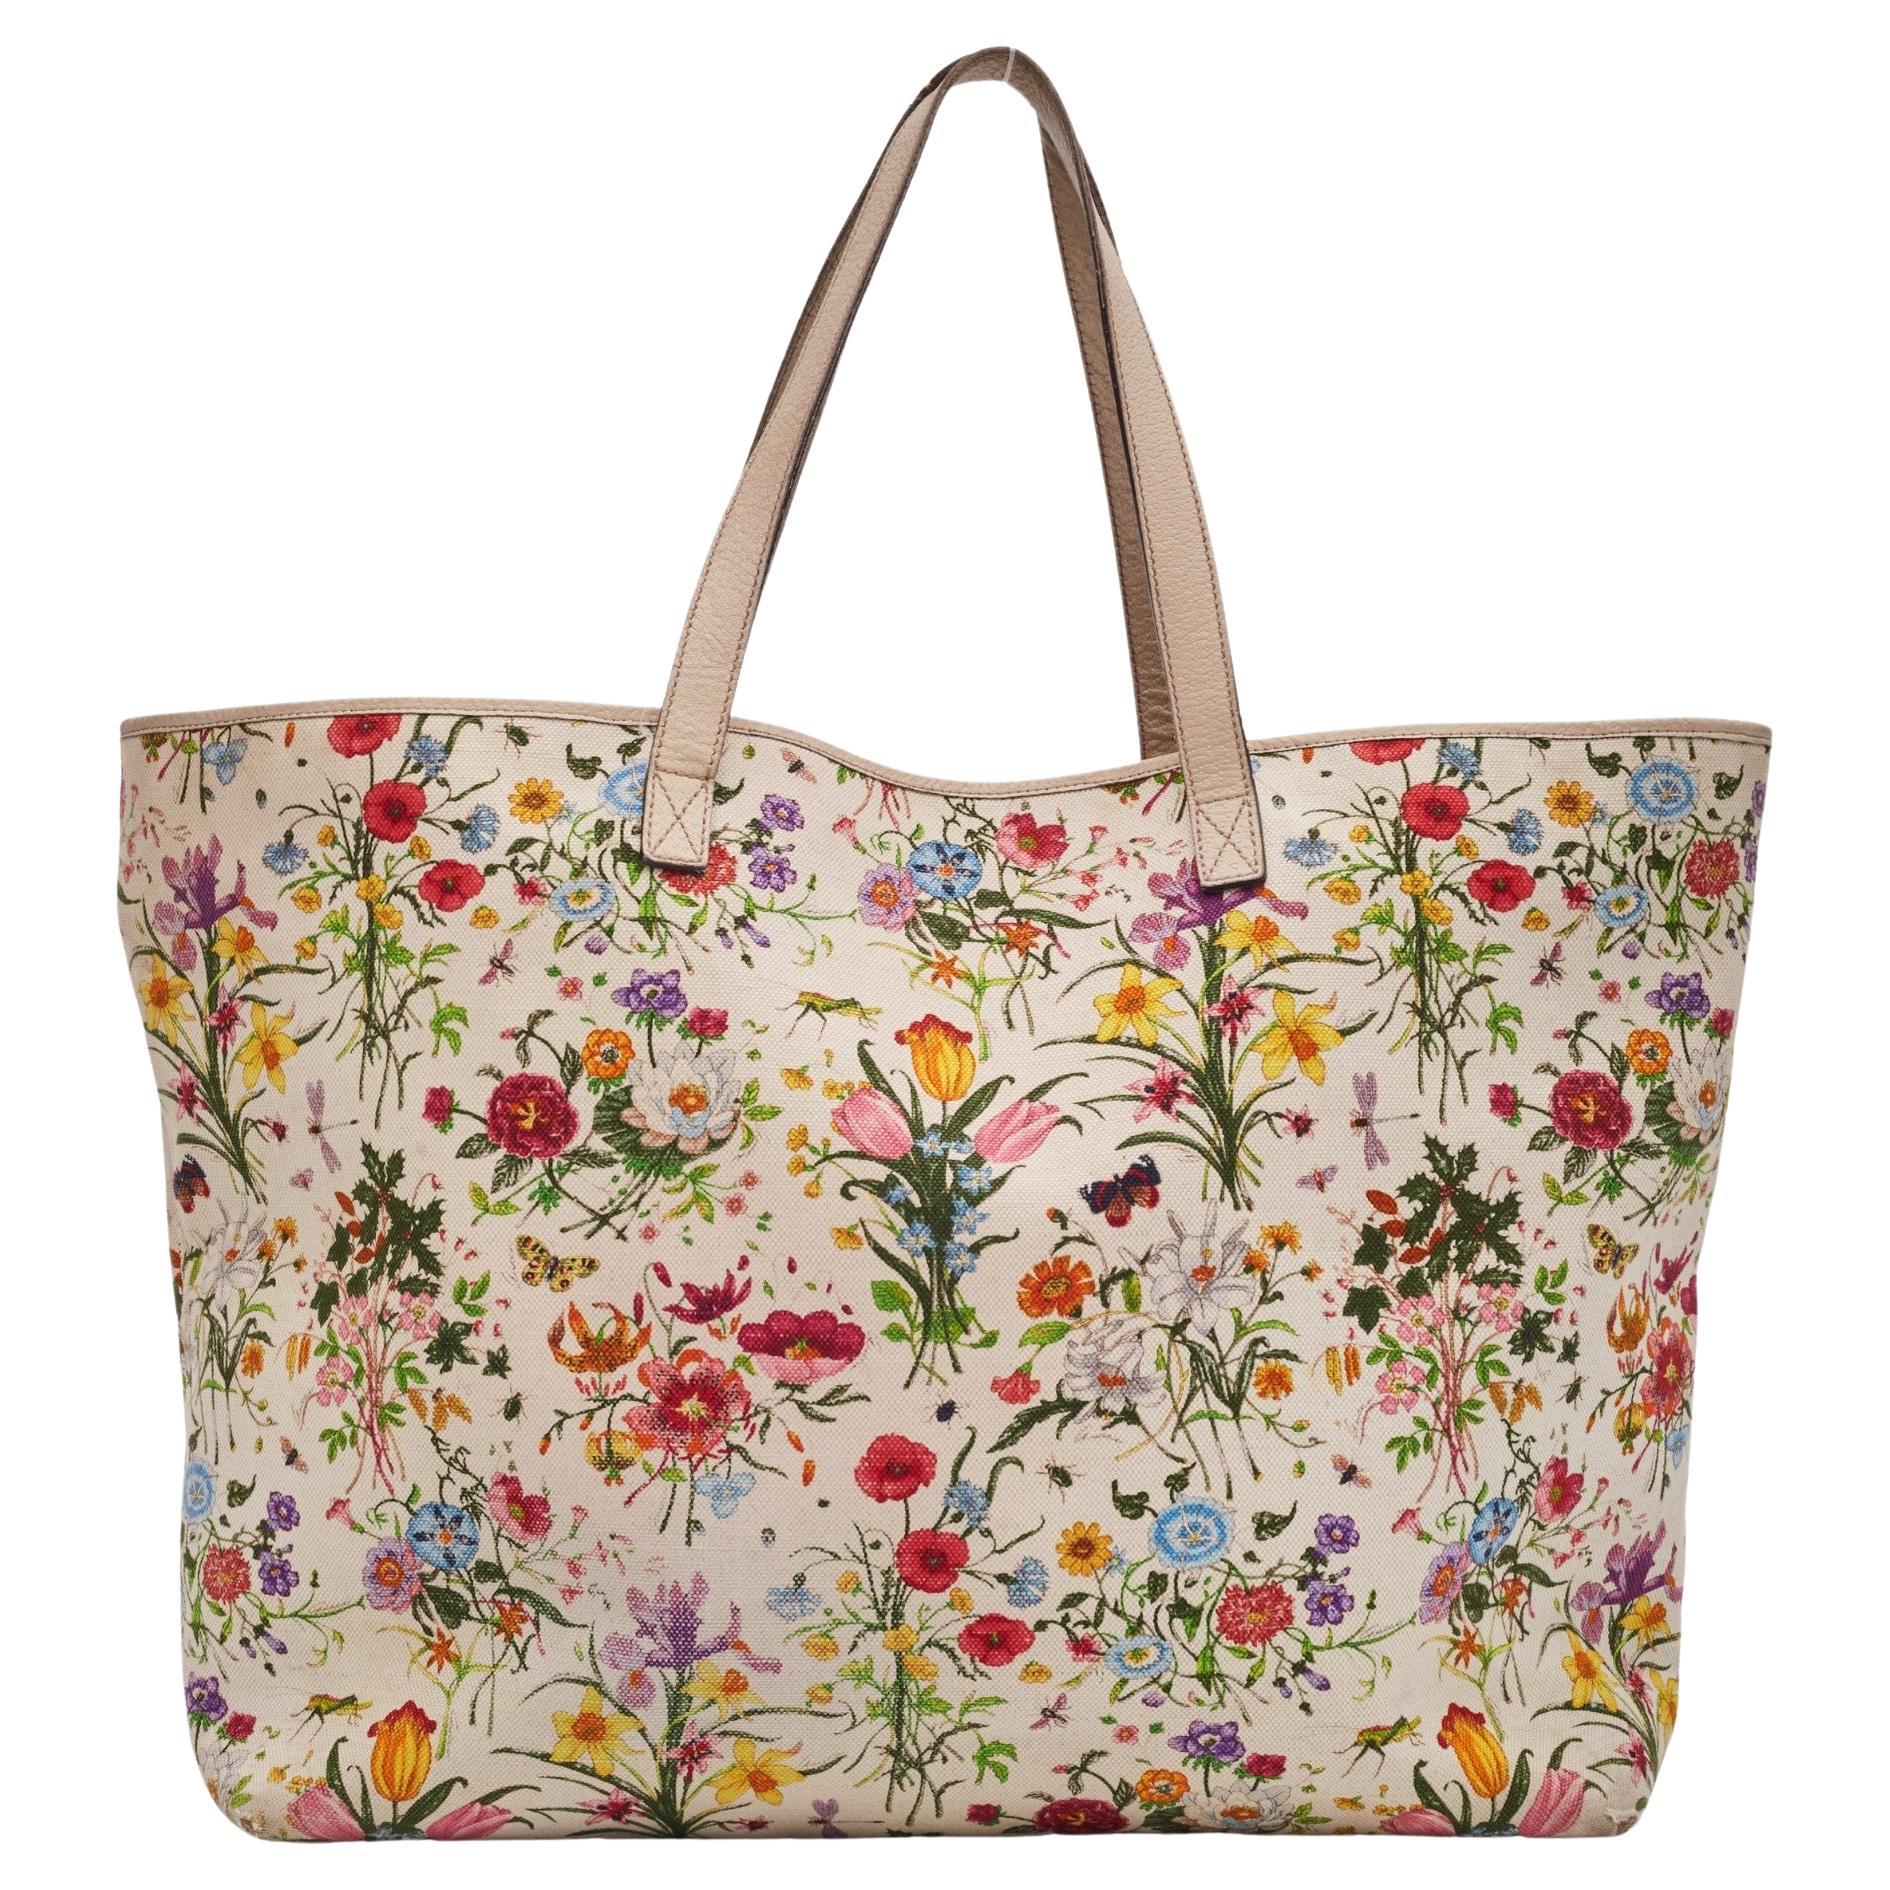 Gucci Floral Flora Print Canvas Joy Tote Bag Large